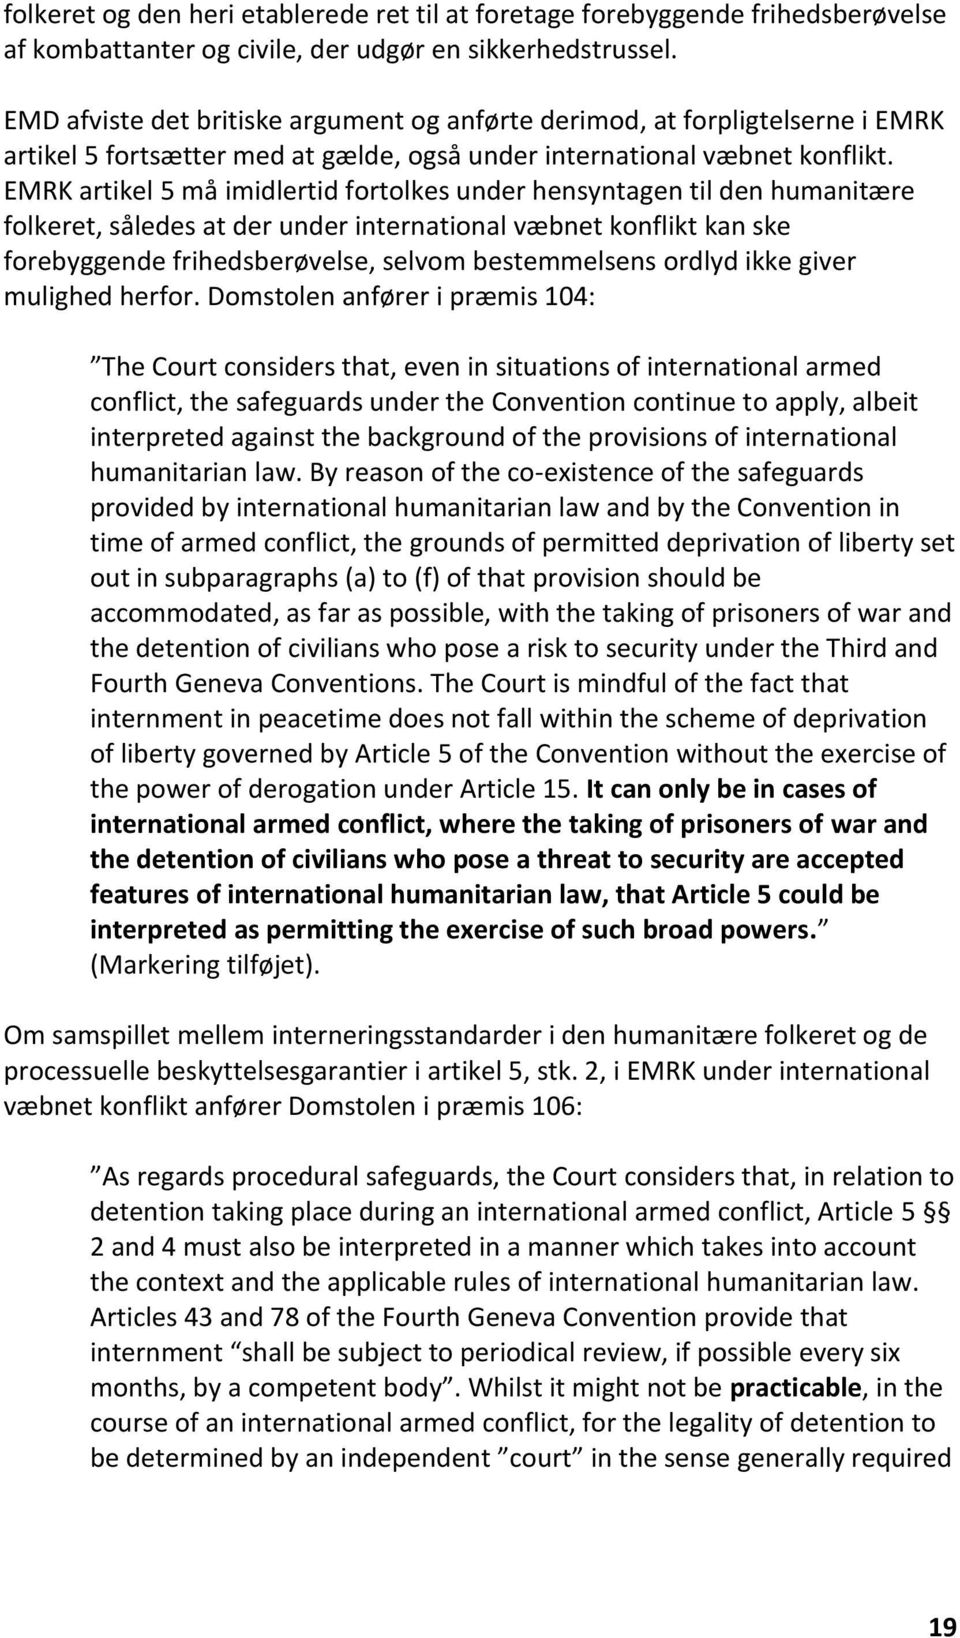 EMRK artikel 5 må imidlertid fortolkes under hensyntagen til den humanitære folkeret, således at der under international væbnet konflikt kan ske forebyggende frihedsberøvelse, selvom bestemmelsens